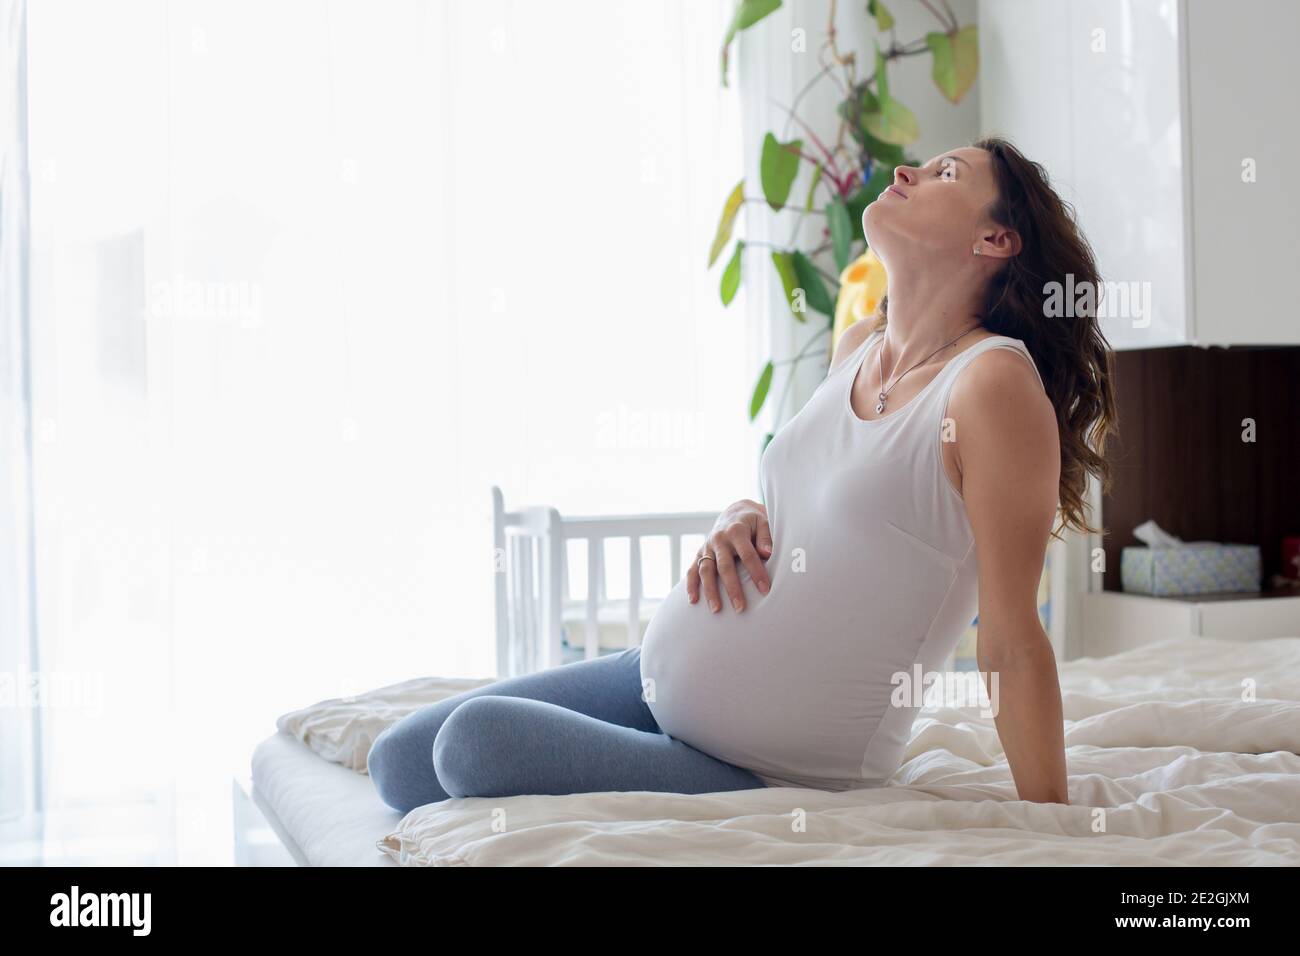 Belle Jeune femme enceinte, dans la douleur avec la contraction du travail,  assis sur le lit dans la chambre, prepraring pour donner une naissance  Photo Stock - Alamy